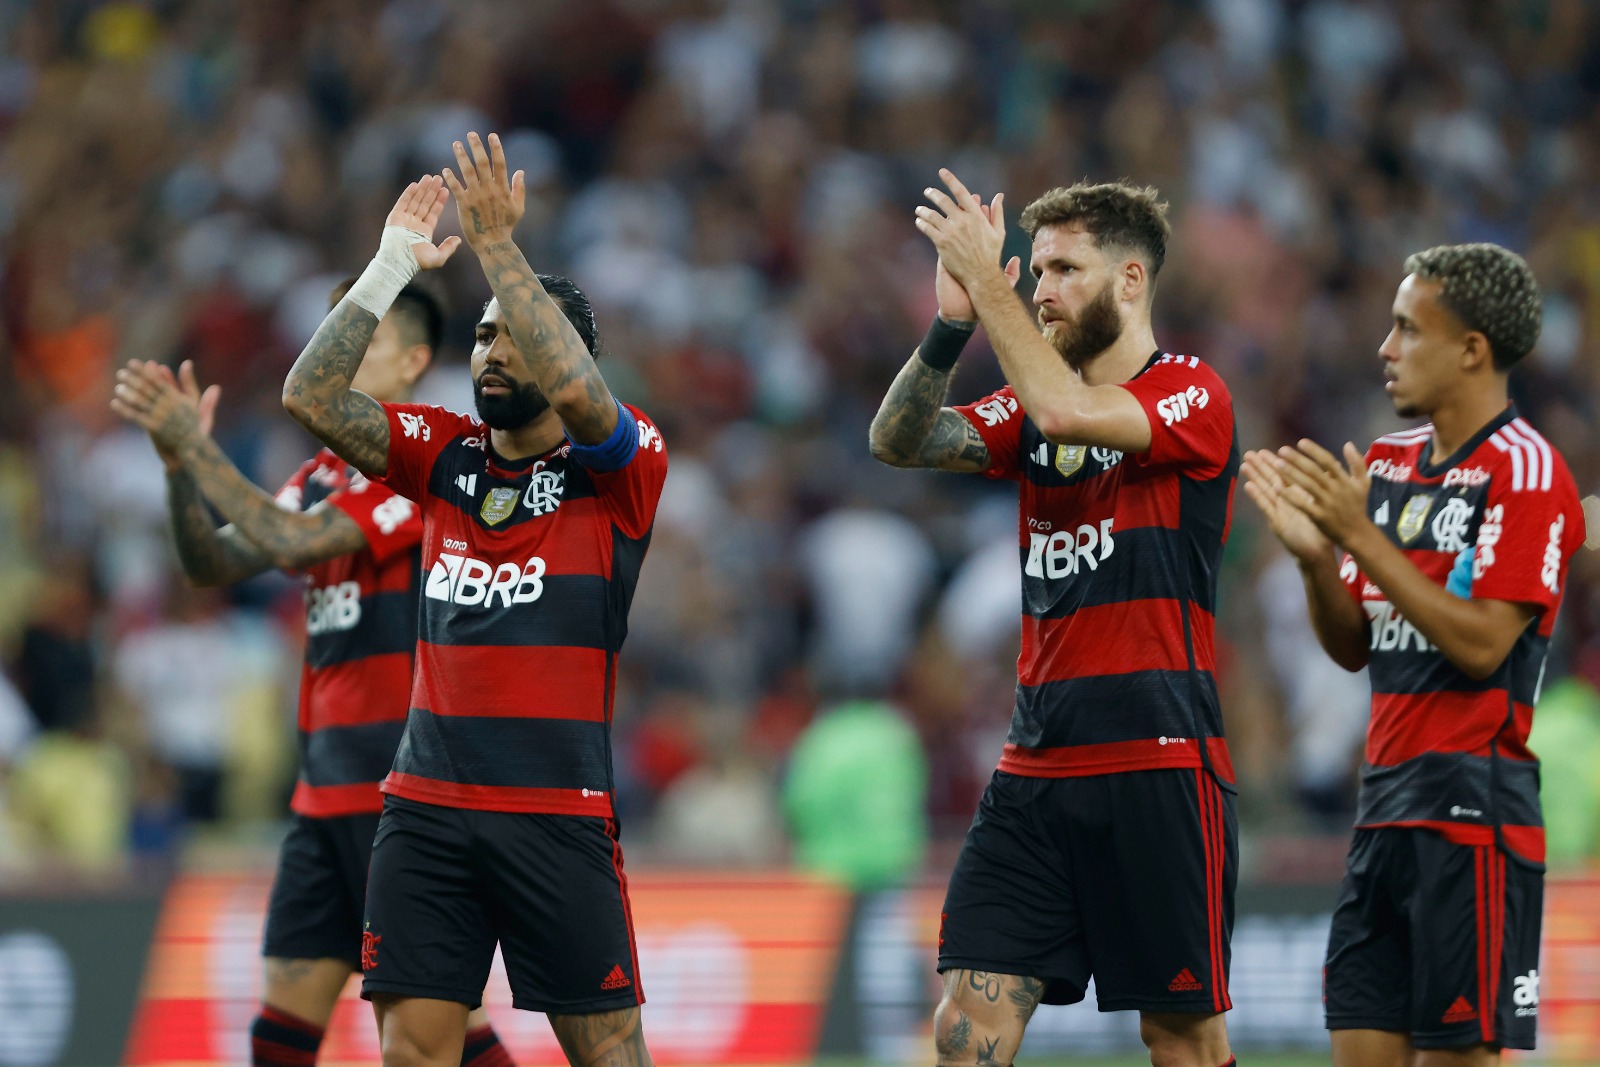 Flamengo tem retrospecto positivo em oitavas de final da Copa do Brasil